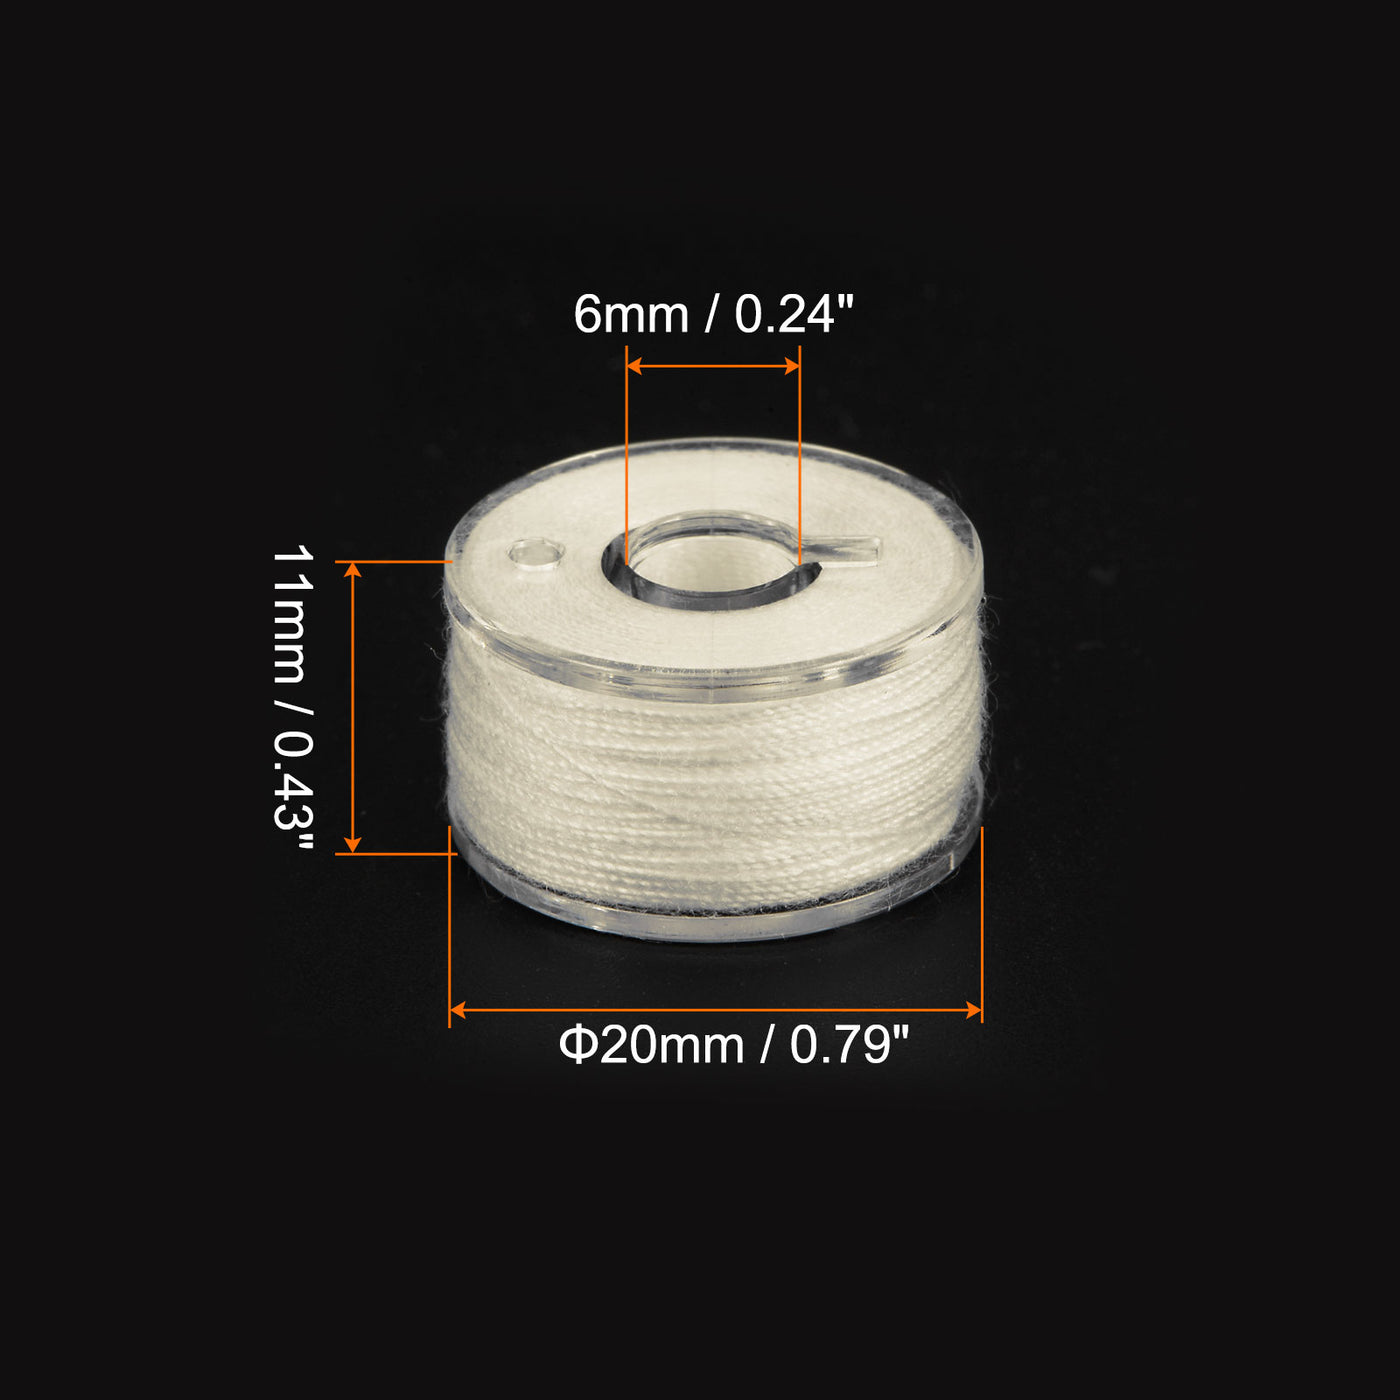 Harfington Prewound Sewing Bobbin Thread Set of 25pcs with Storage Case, Light Beige